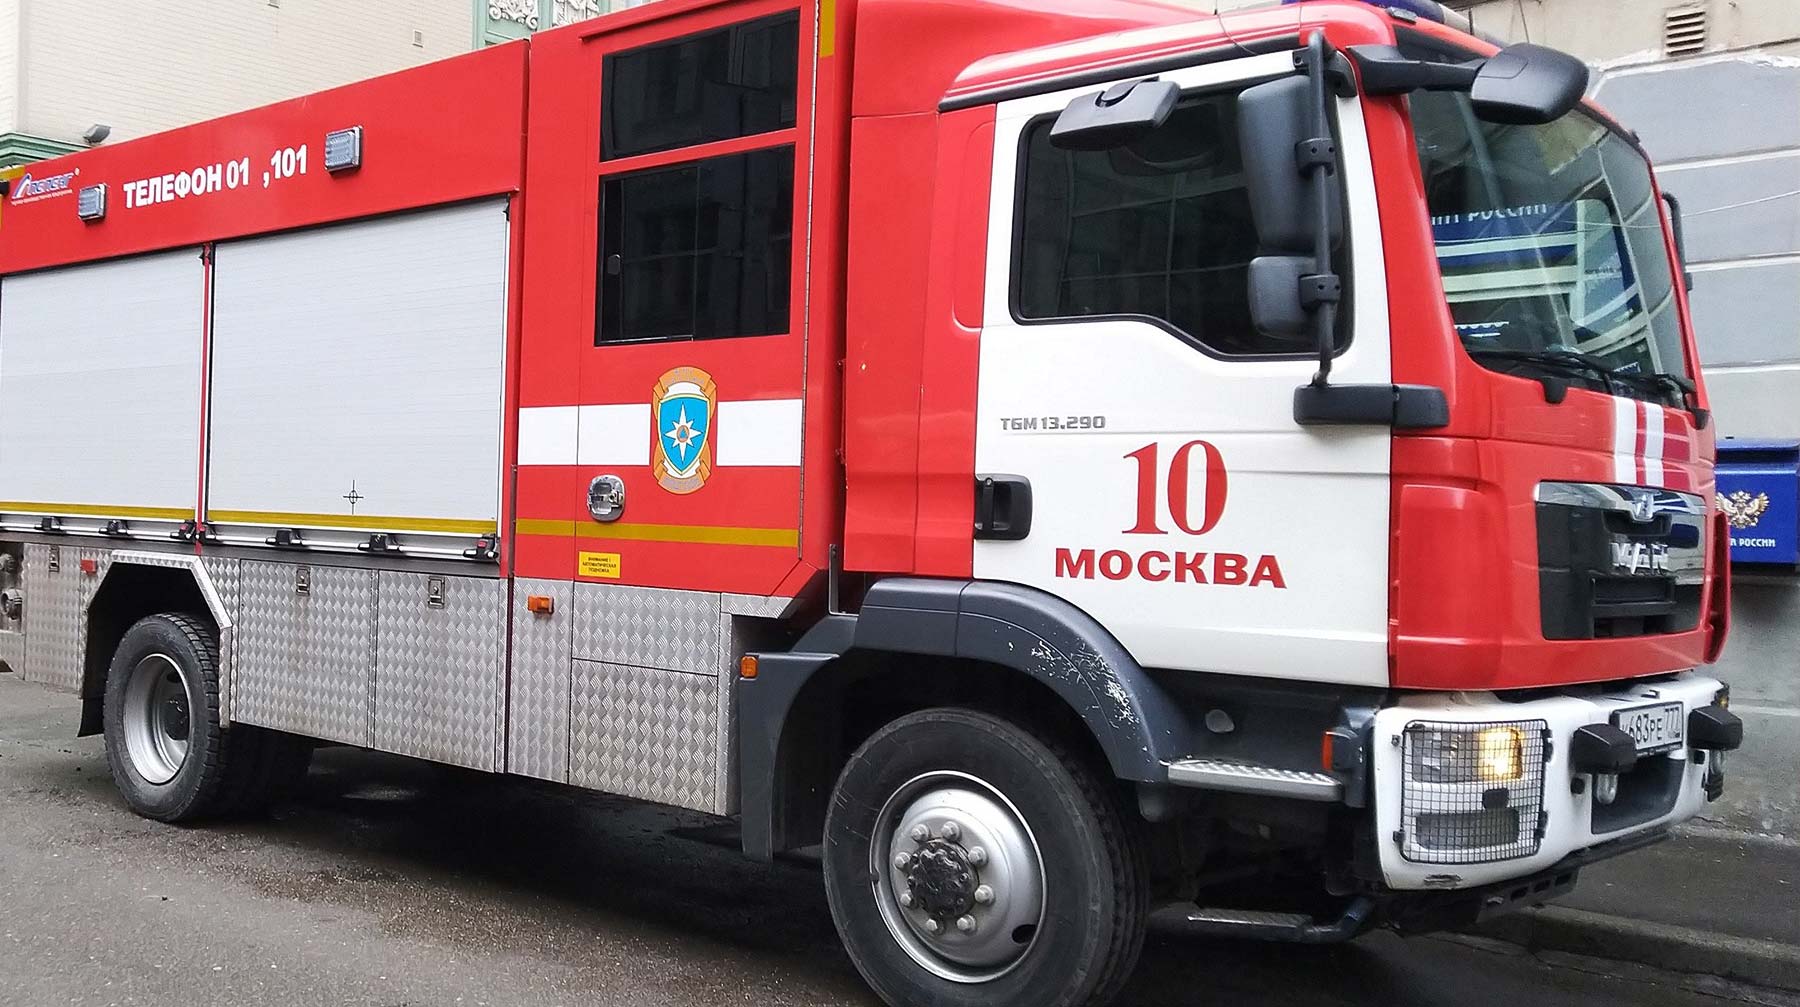 Возгорание разрослось до 500 квадратных метров, прежде чем пожарные смогли локализовать и устранить его Фото: © Агенство Москва / Мобильный репортер